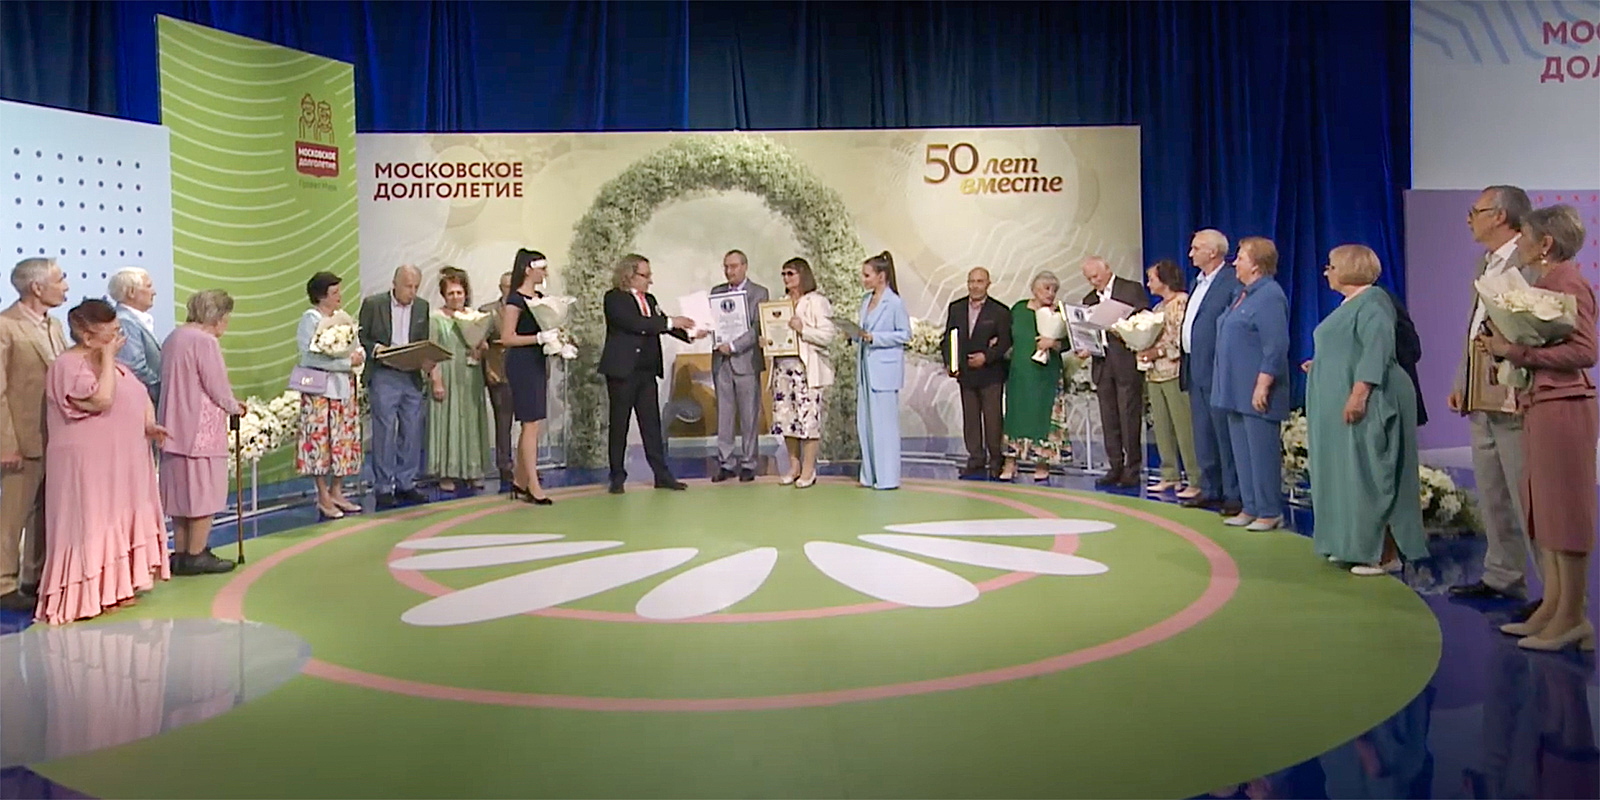 Золотая годовщина свадьбы: участники «Московского долголетия» установили мировой рекорд